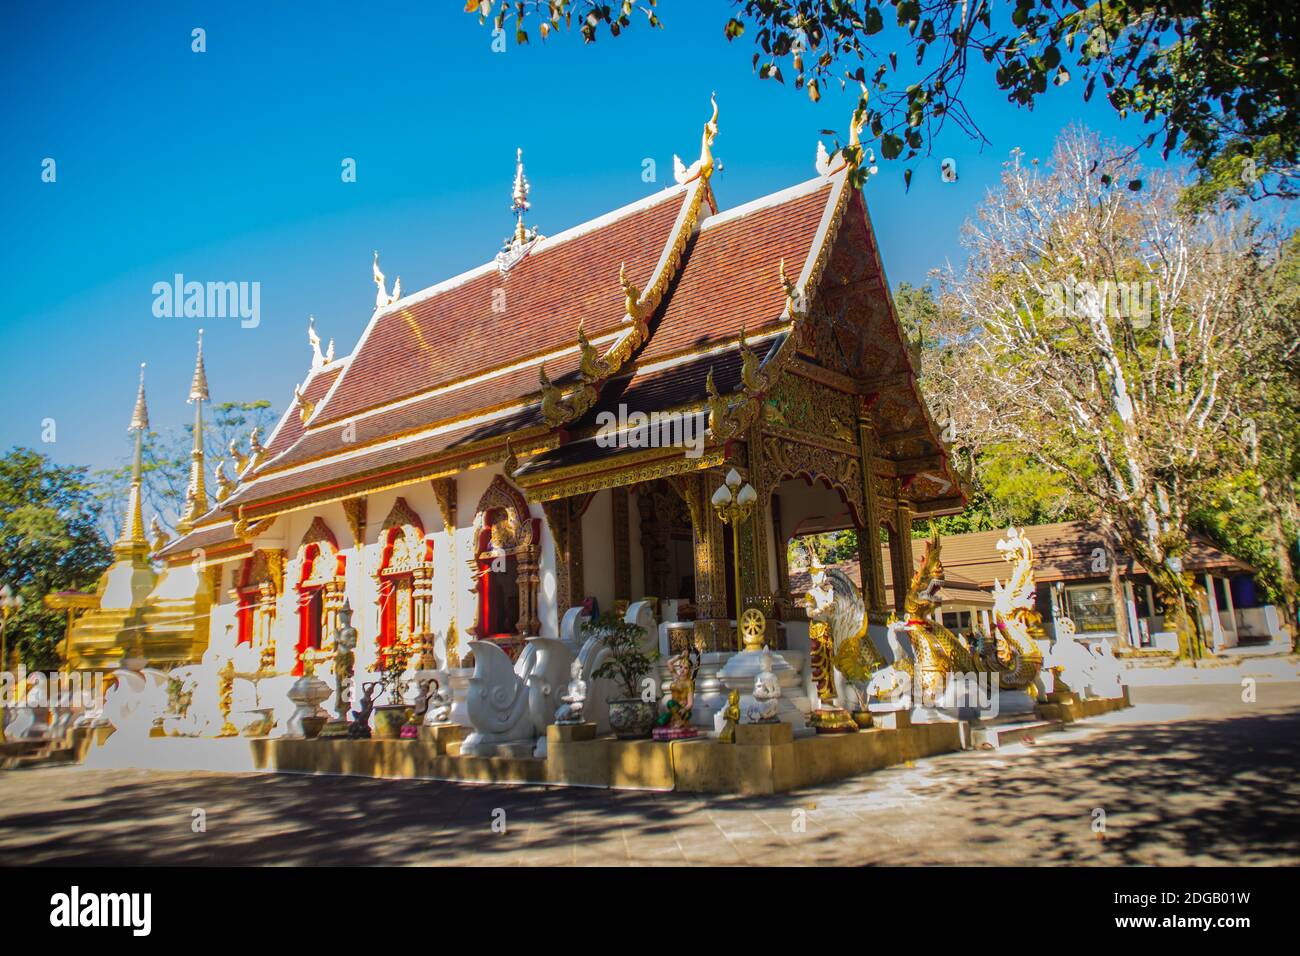 Belle pagode dorate a Wat Phra che Doi Tung, Chiang Rai. Wat Phra che Doi Tung comprende una gemella Lanna-stile stupa, uno dei quali è credere Foto Stock